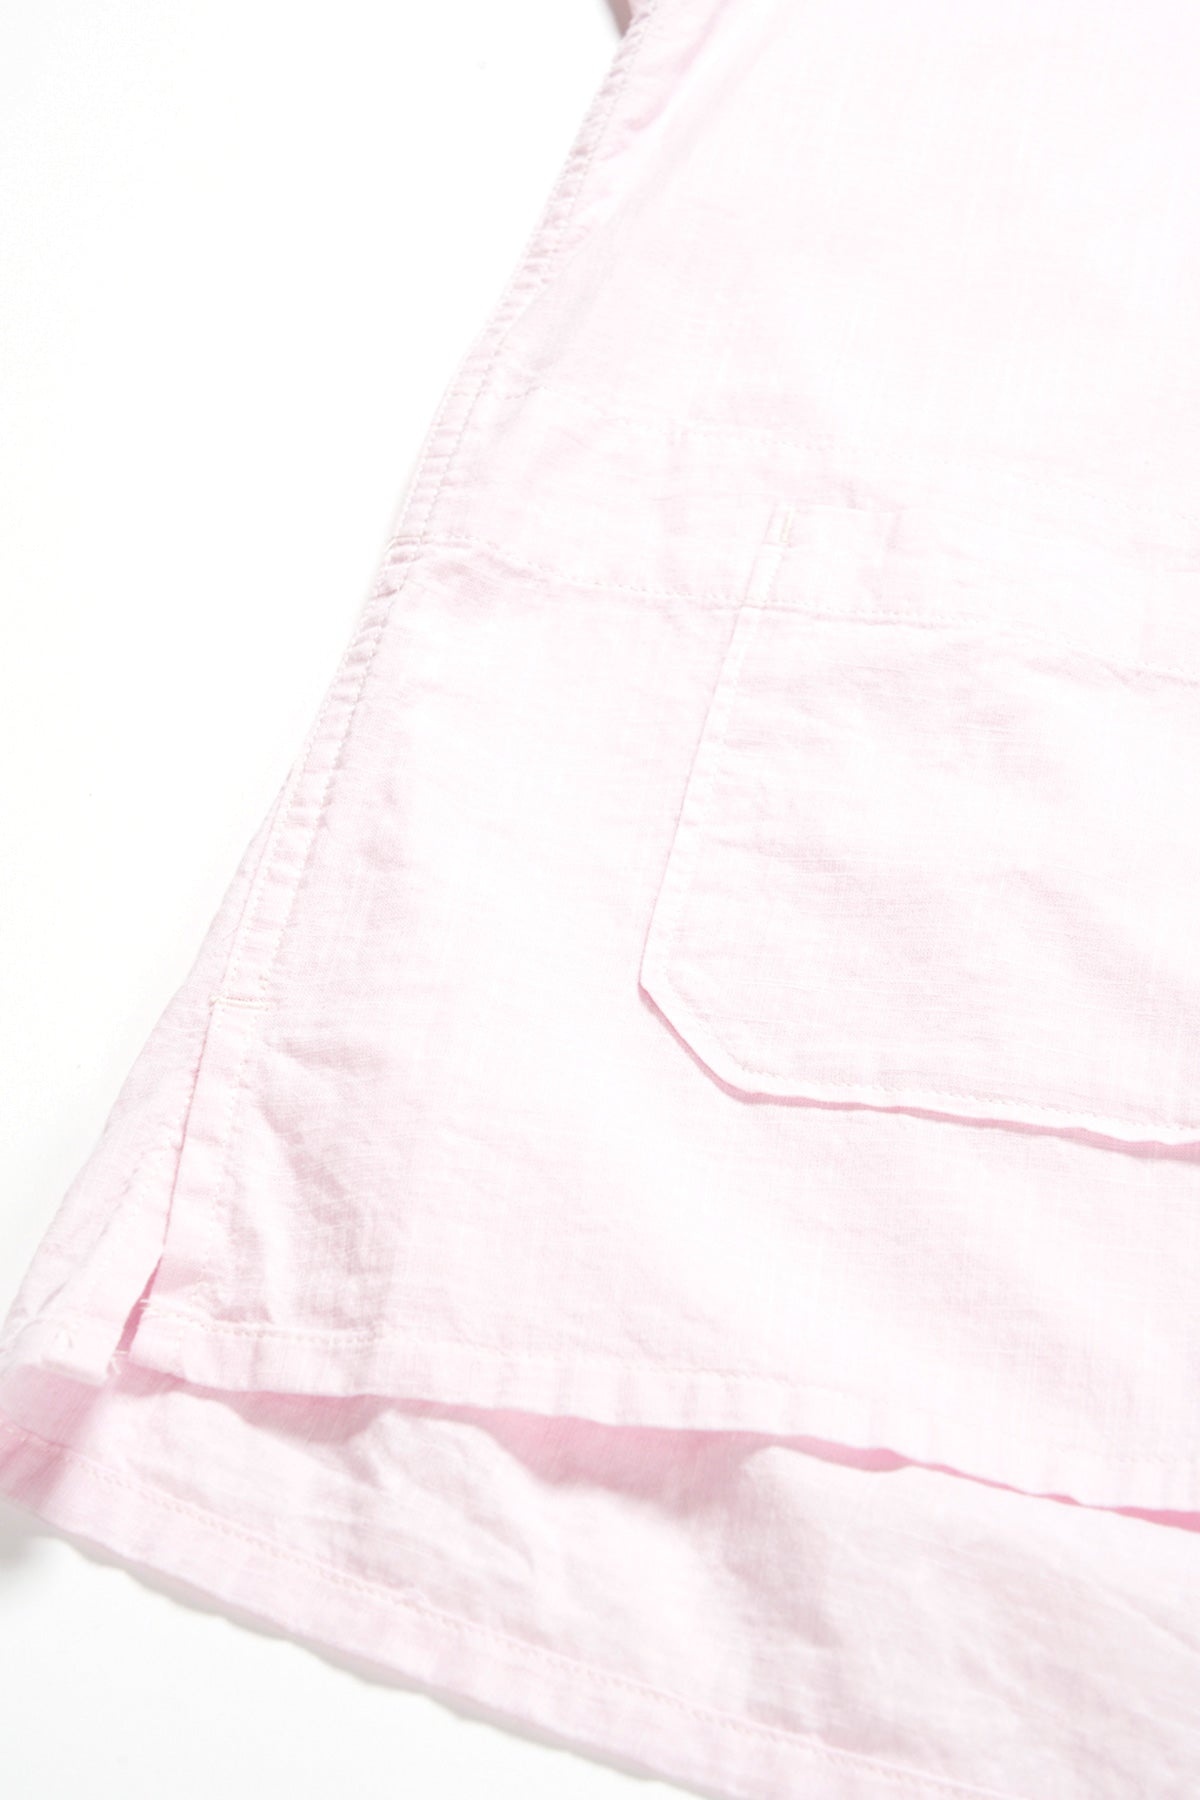 Camp Shirt - Pink Cotton Handkerchief - 4